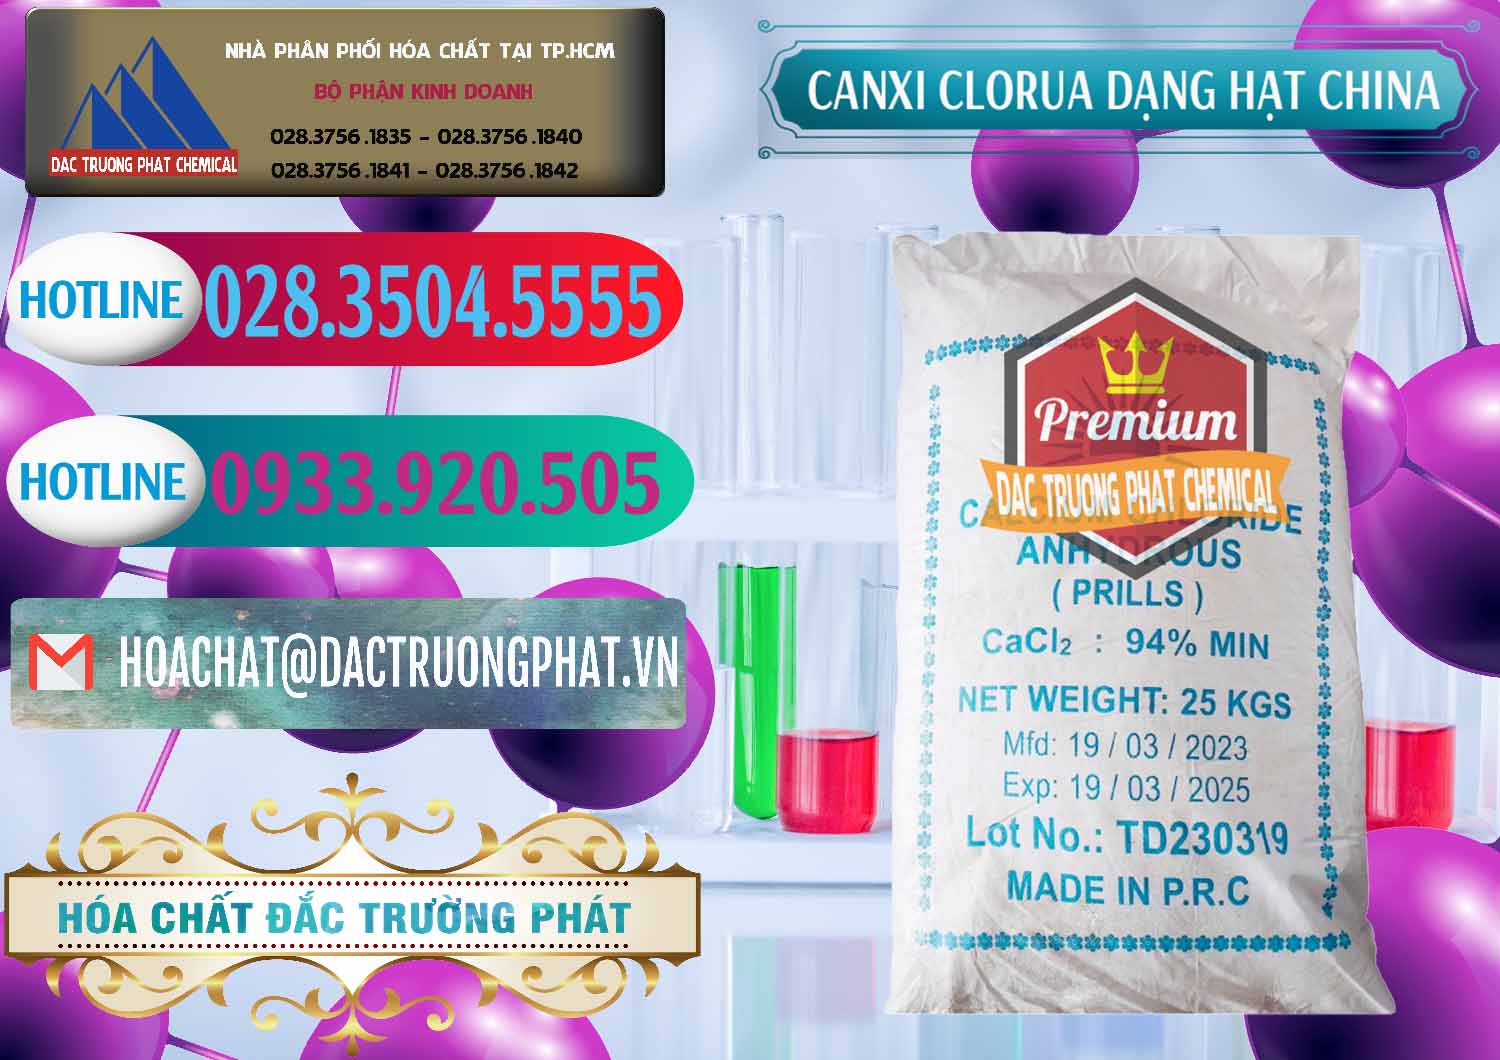 Công ty cung cấp và bán CaCl2 – Canxi Clorua 94% Dạng Hạt Trung Quốc China - 0373 - Phân phối ( nhập khẩu ) hóa chất tại TP.HCM - truongphat.vn